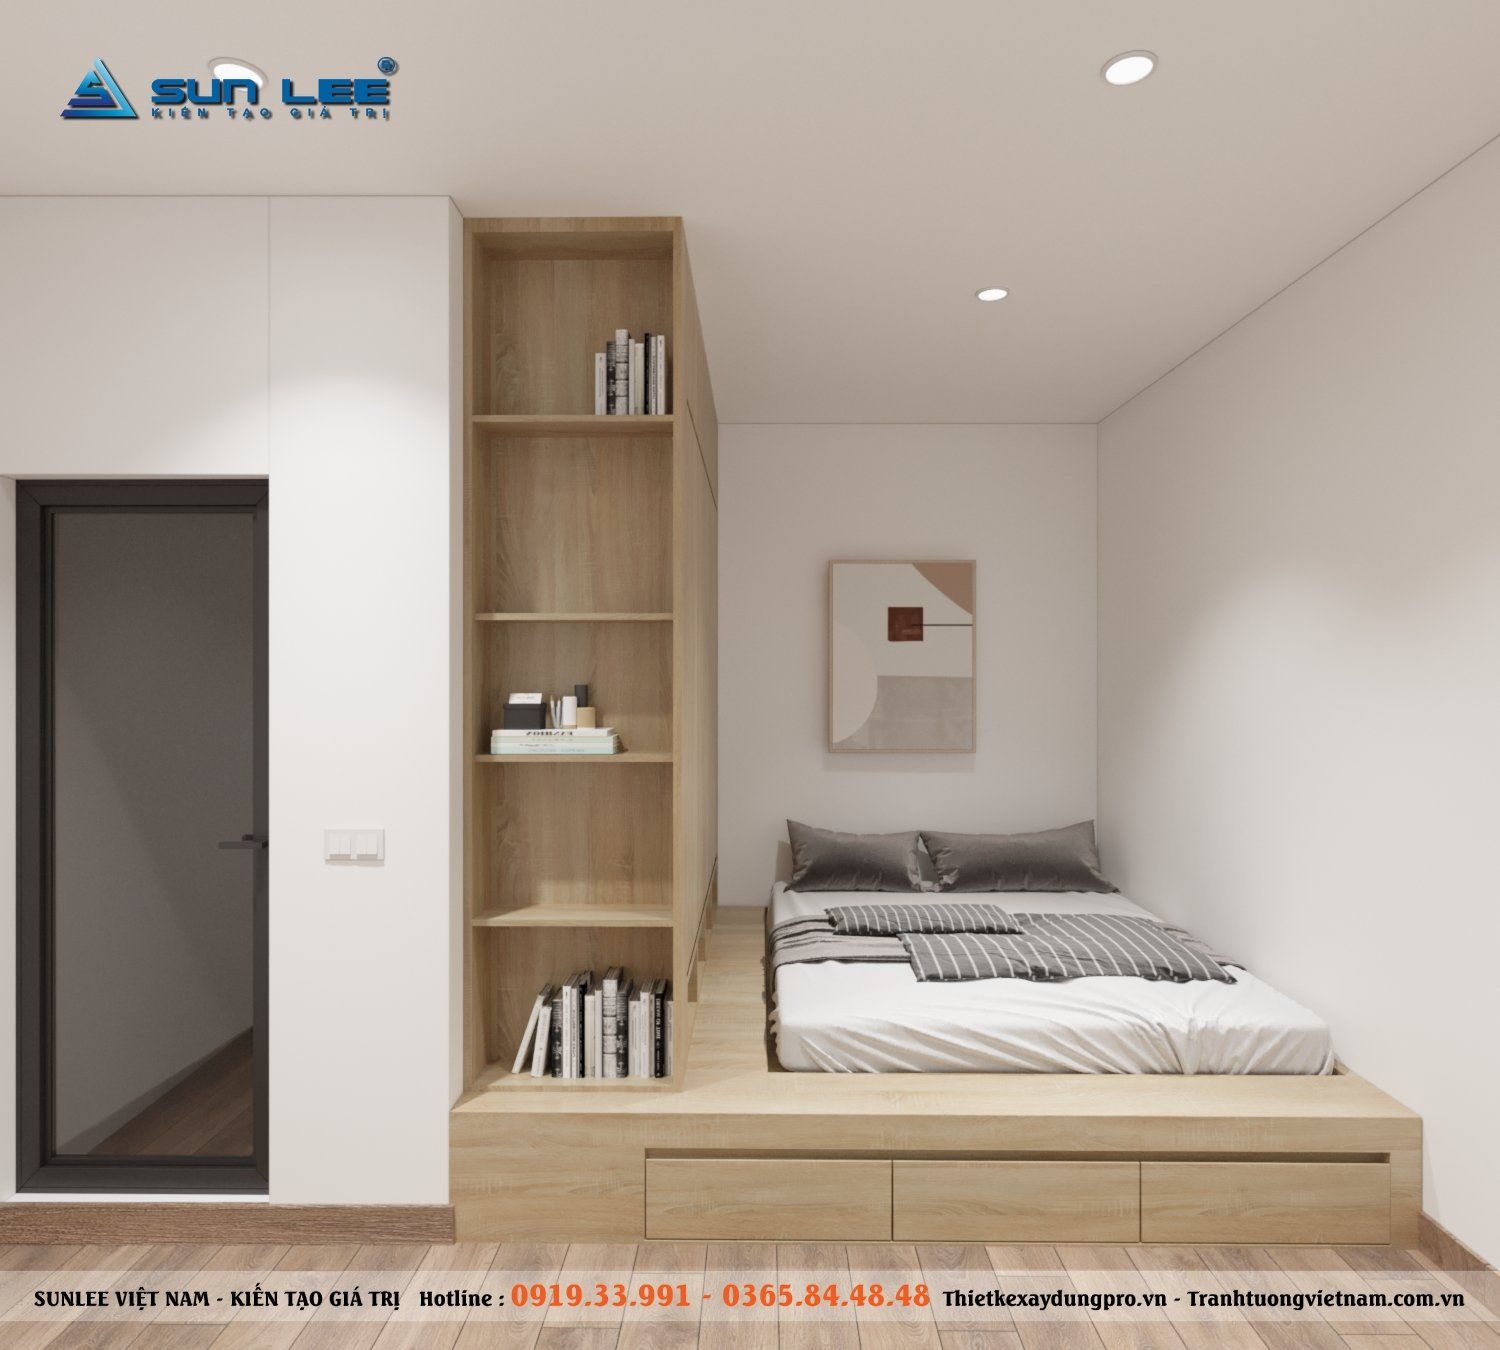 Phòng ngủ được thi công, thiết kế với những vật dụng cơ bản và cần thiết